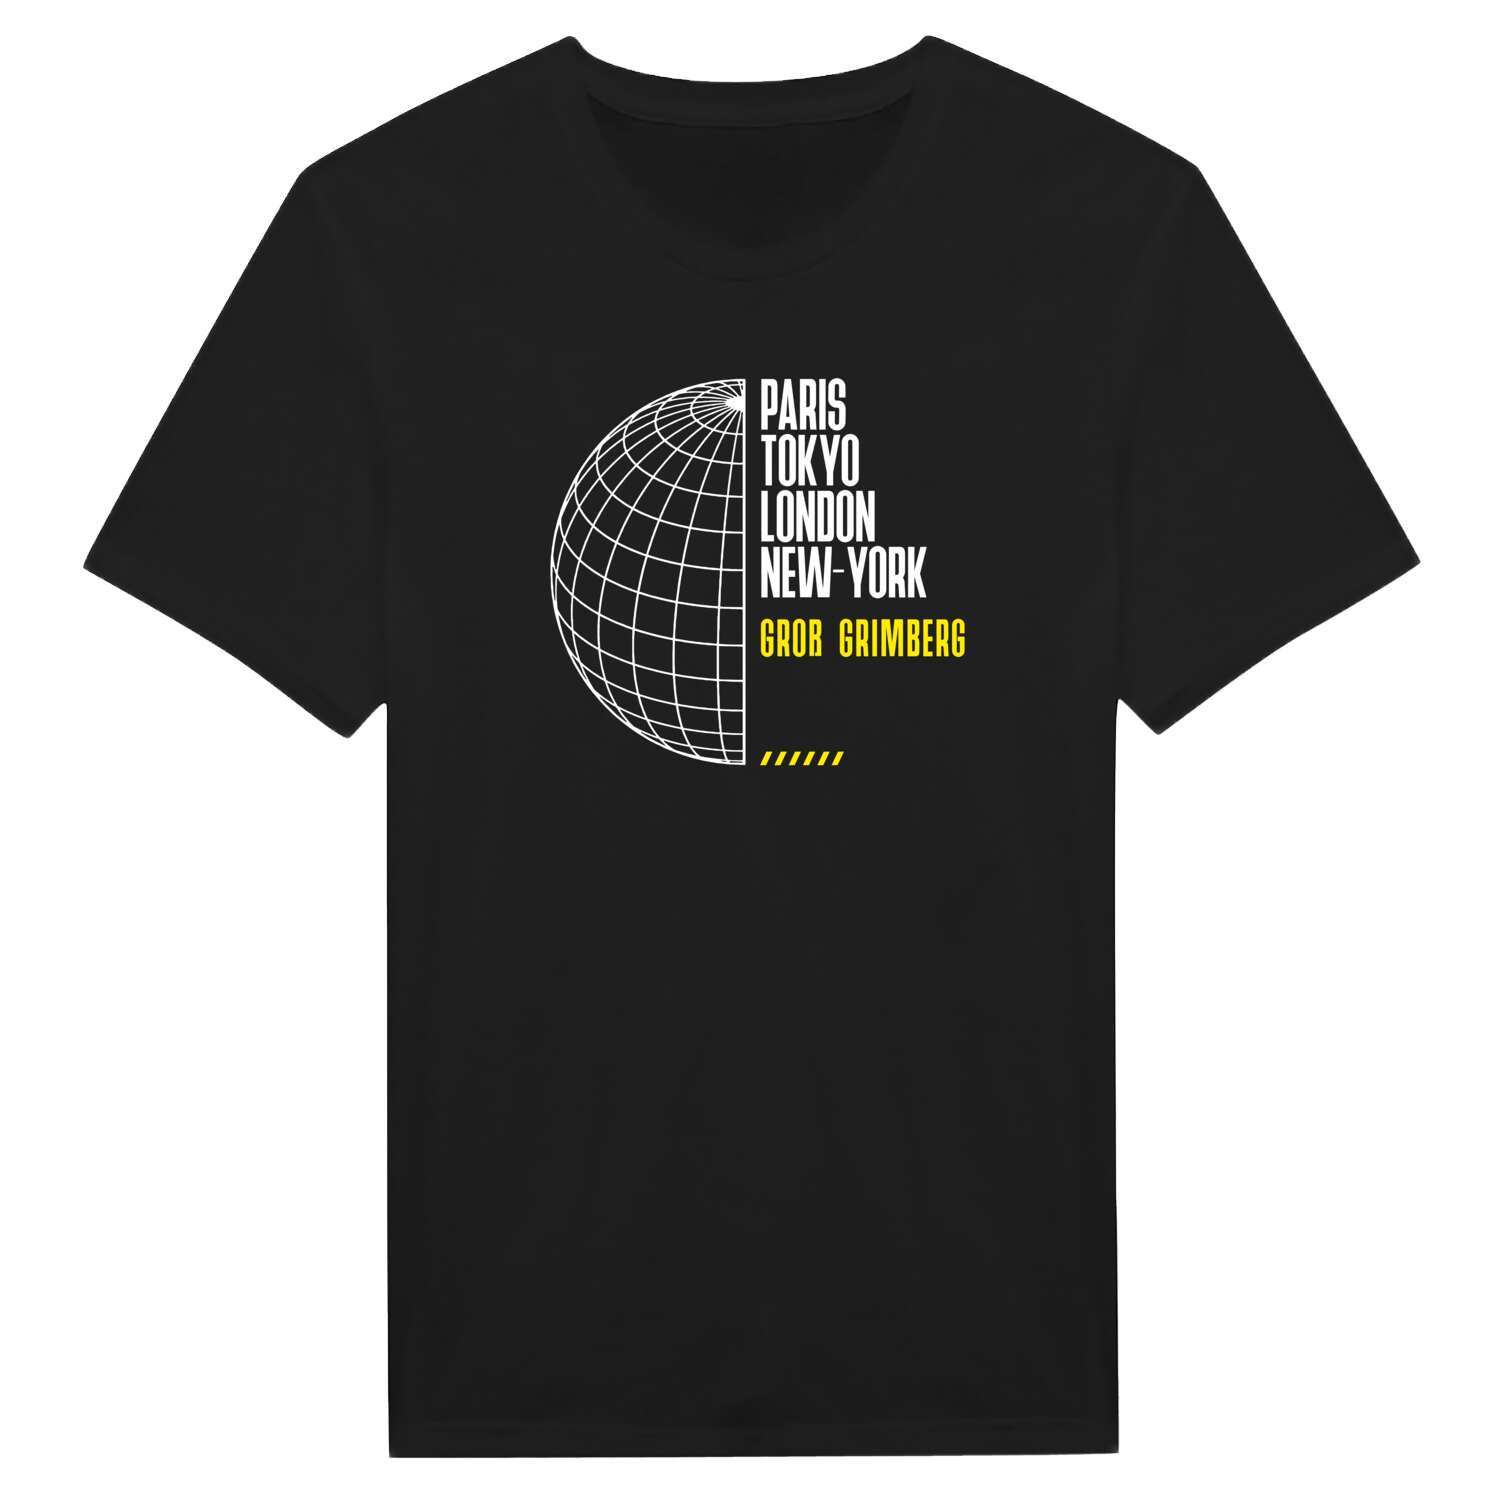 Groß Grimberg T-Shirt »Paris Tokyo London«